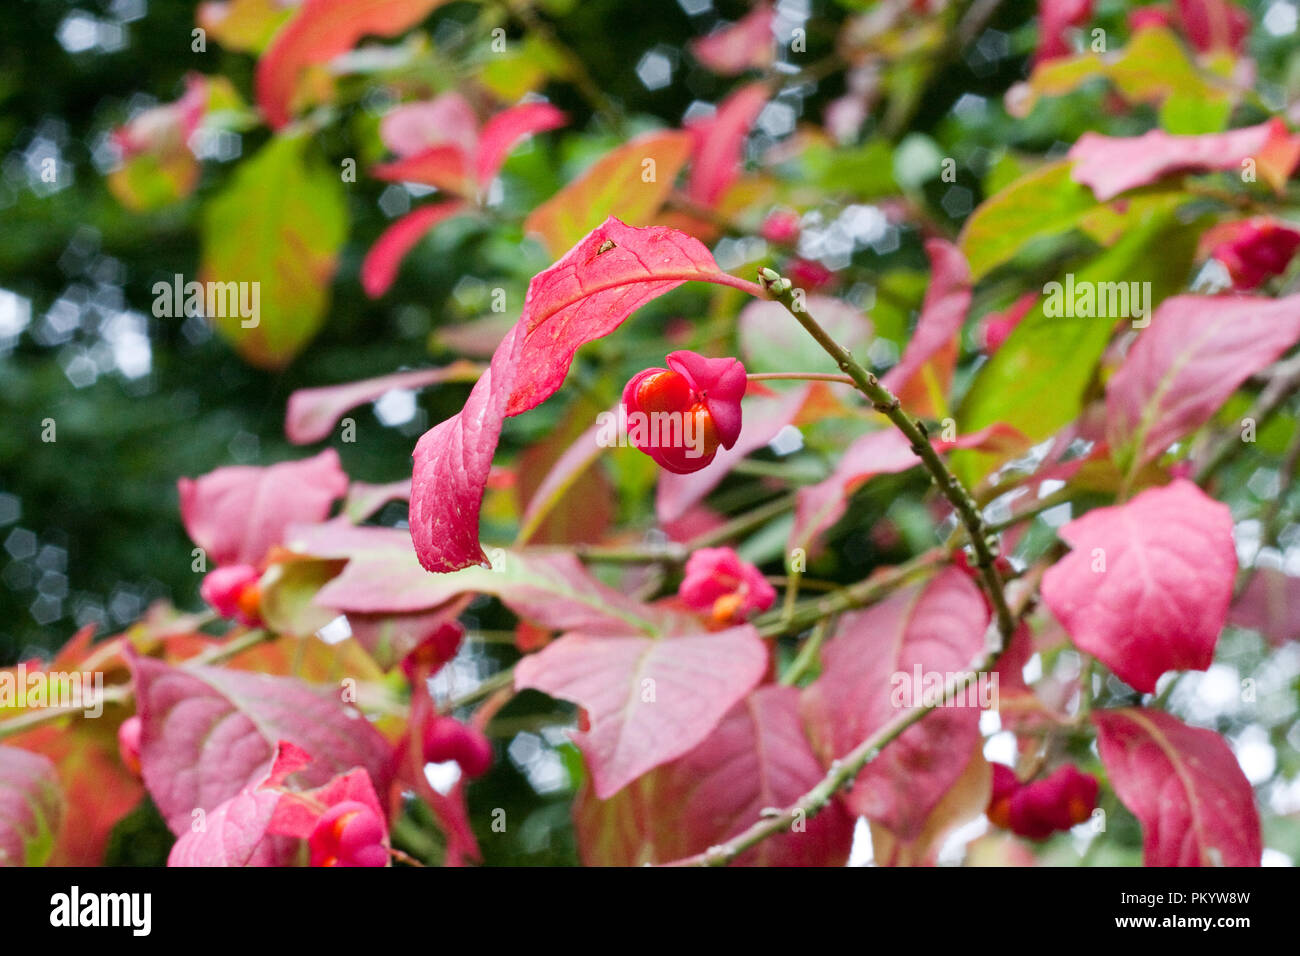 Euonymus europaeus producing seed in autumn Stock Photo